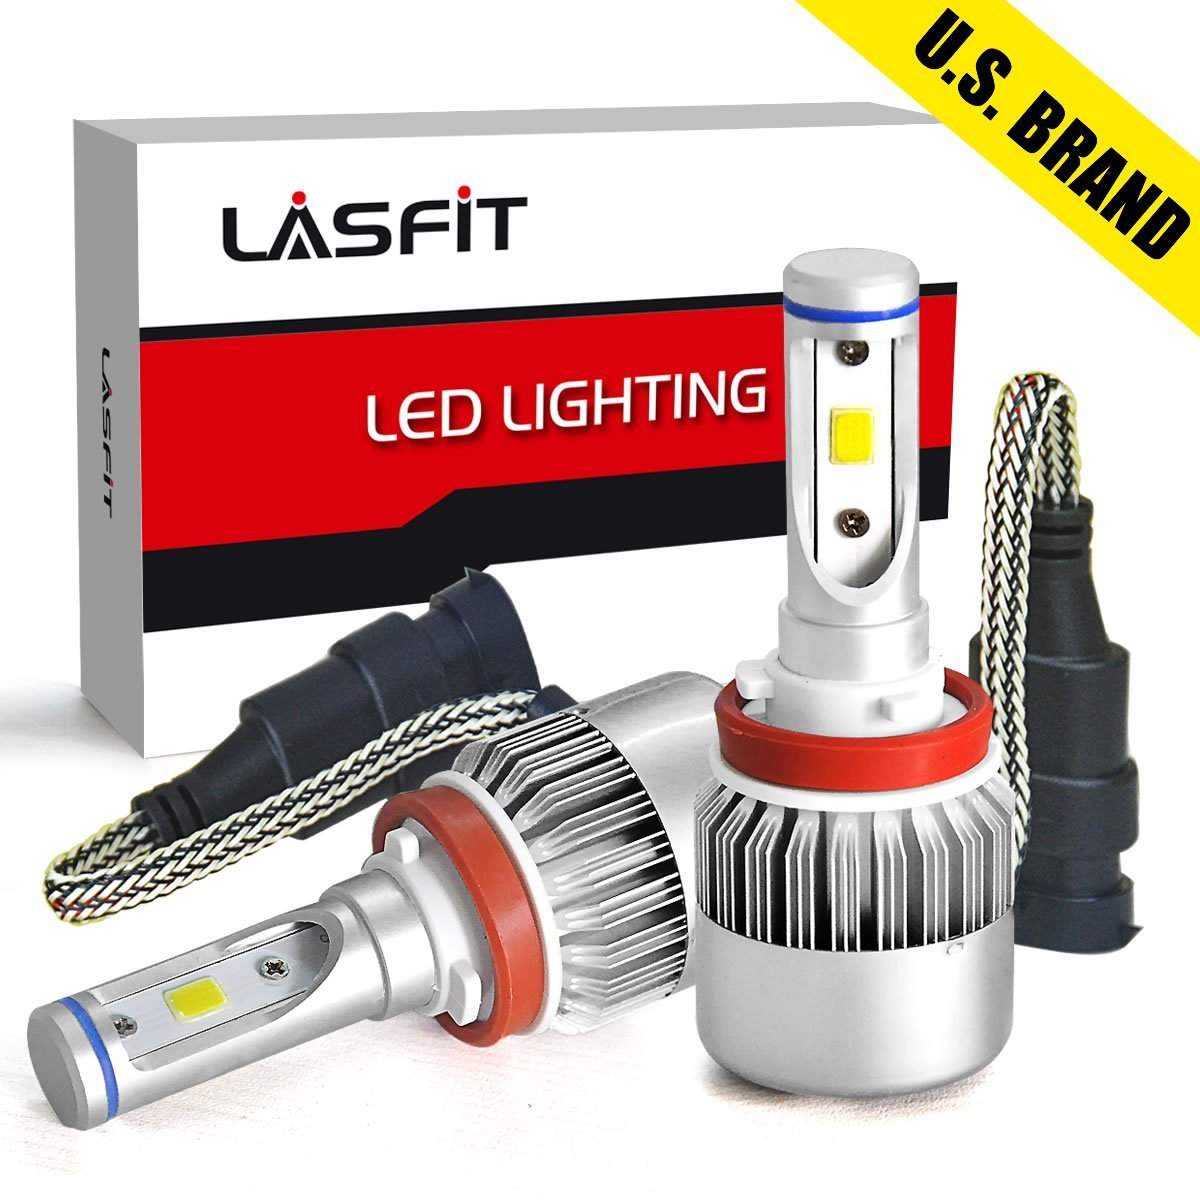 LastFIT LED bulbs